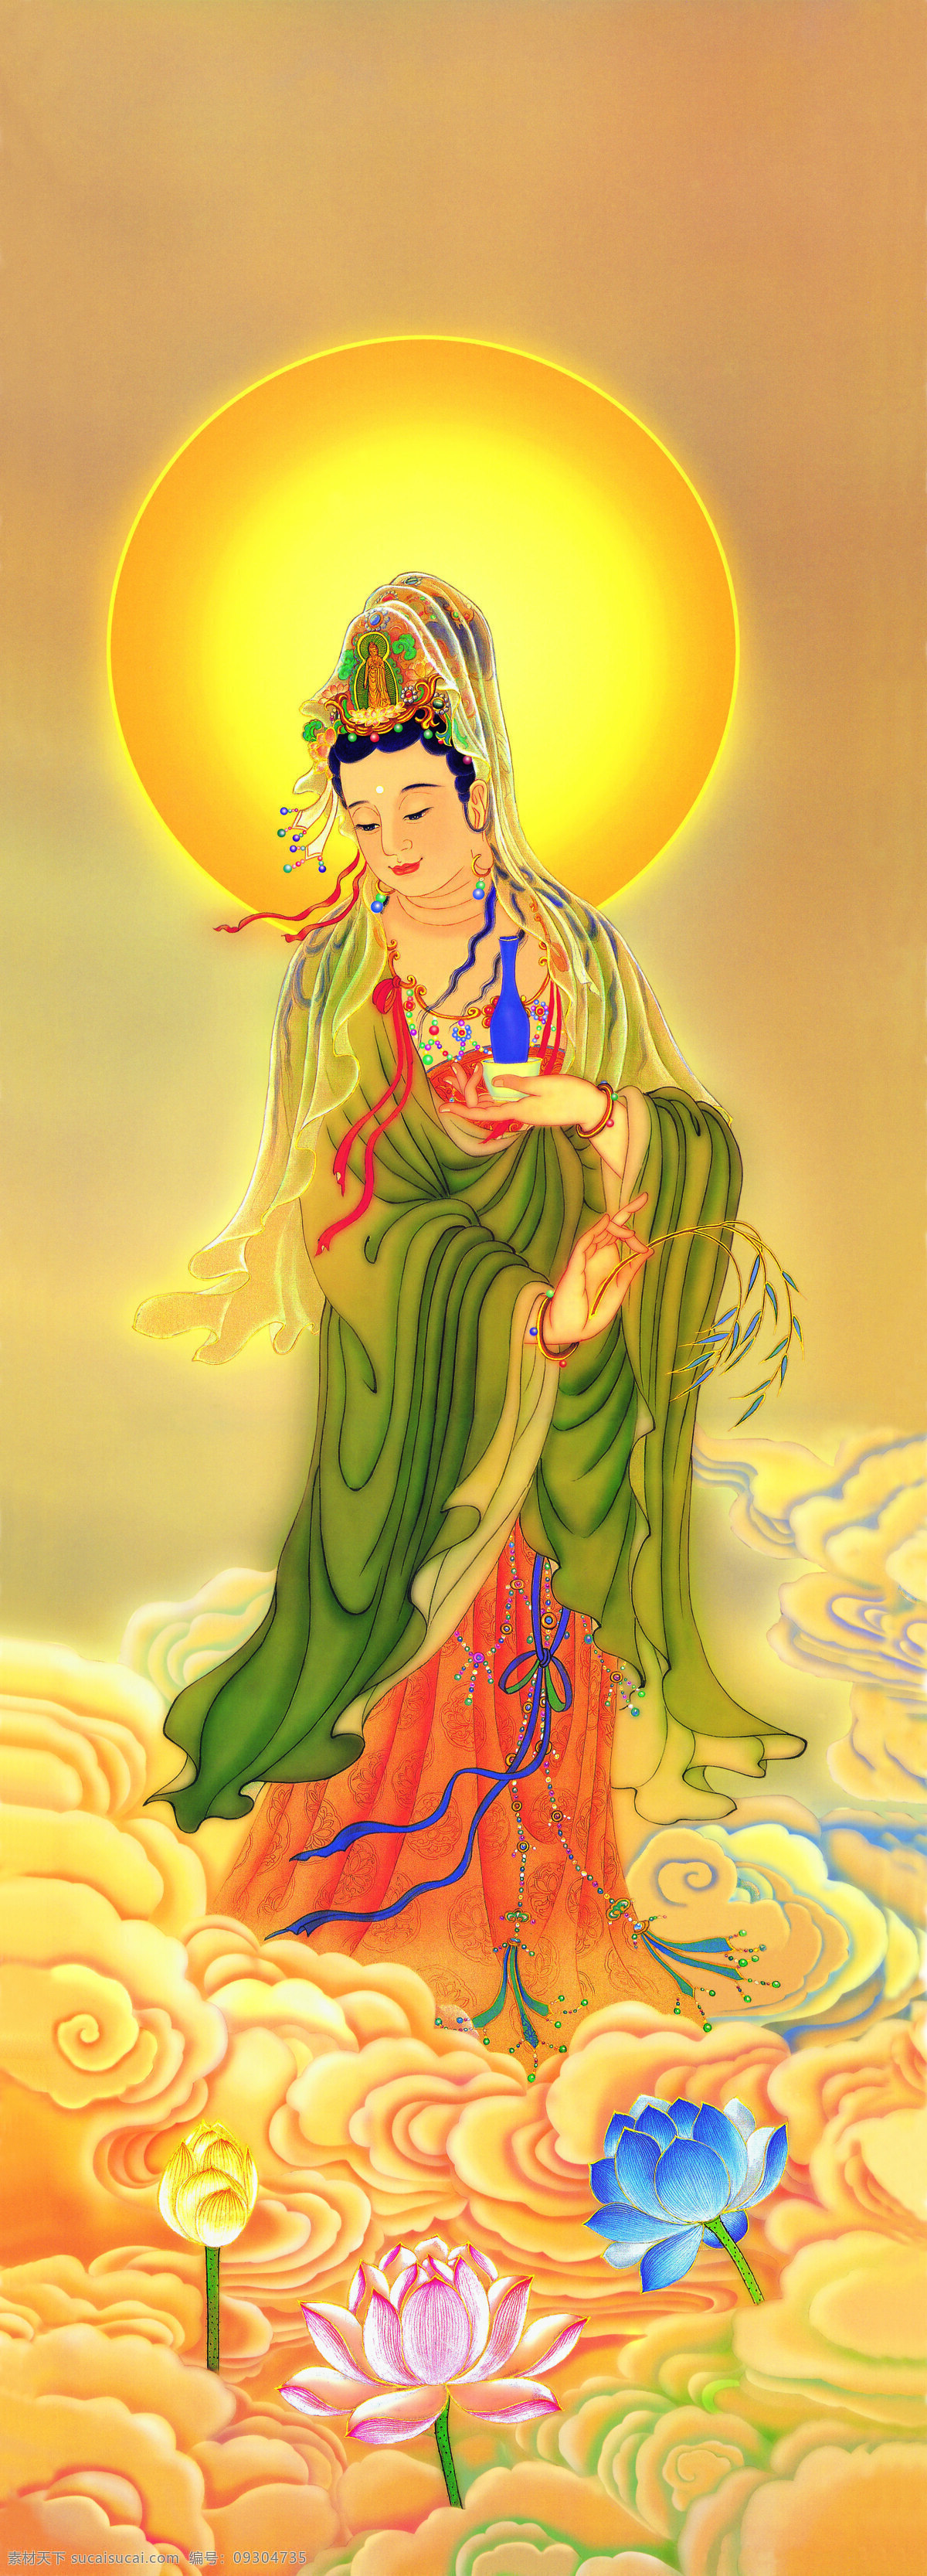 西方三圣图 佛教 佛像 文化艺术 宗教信仰 设计图库